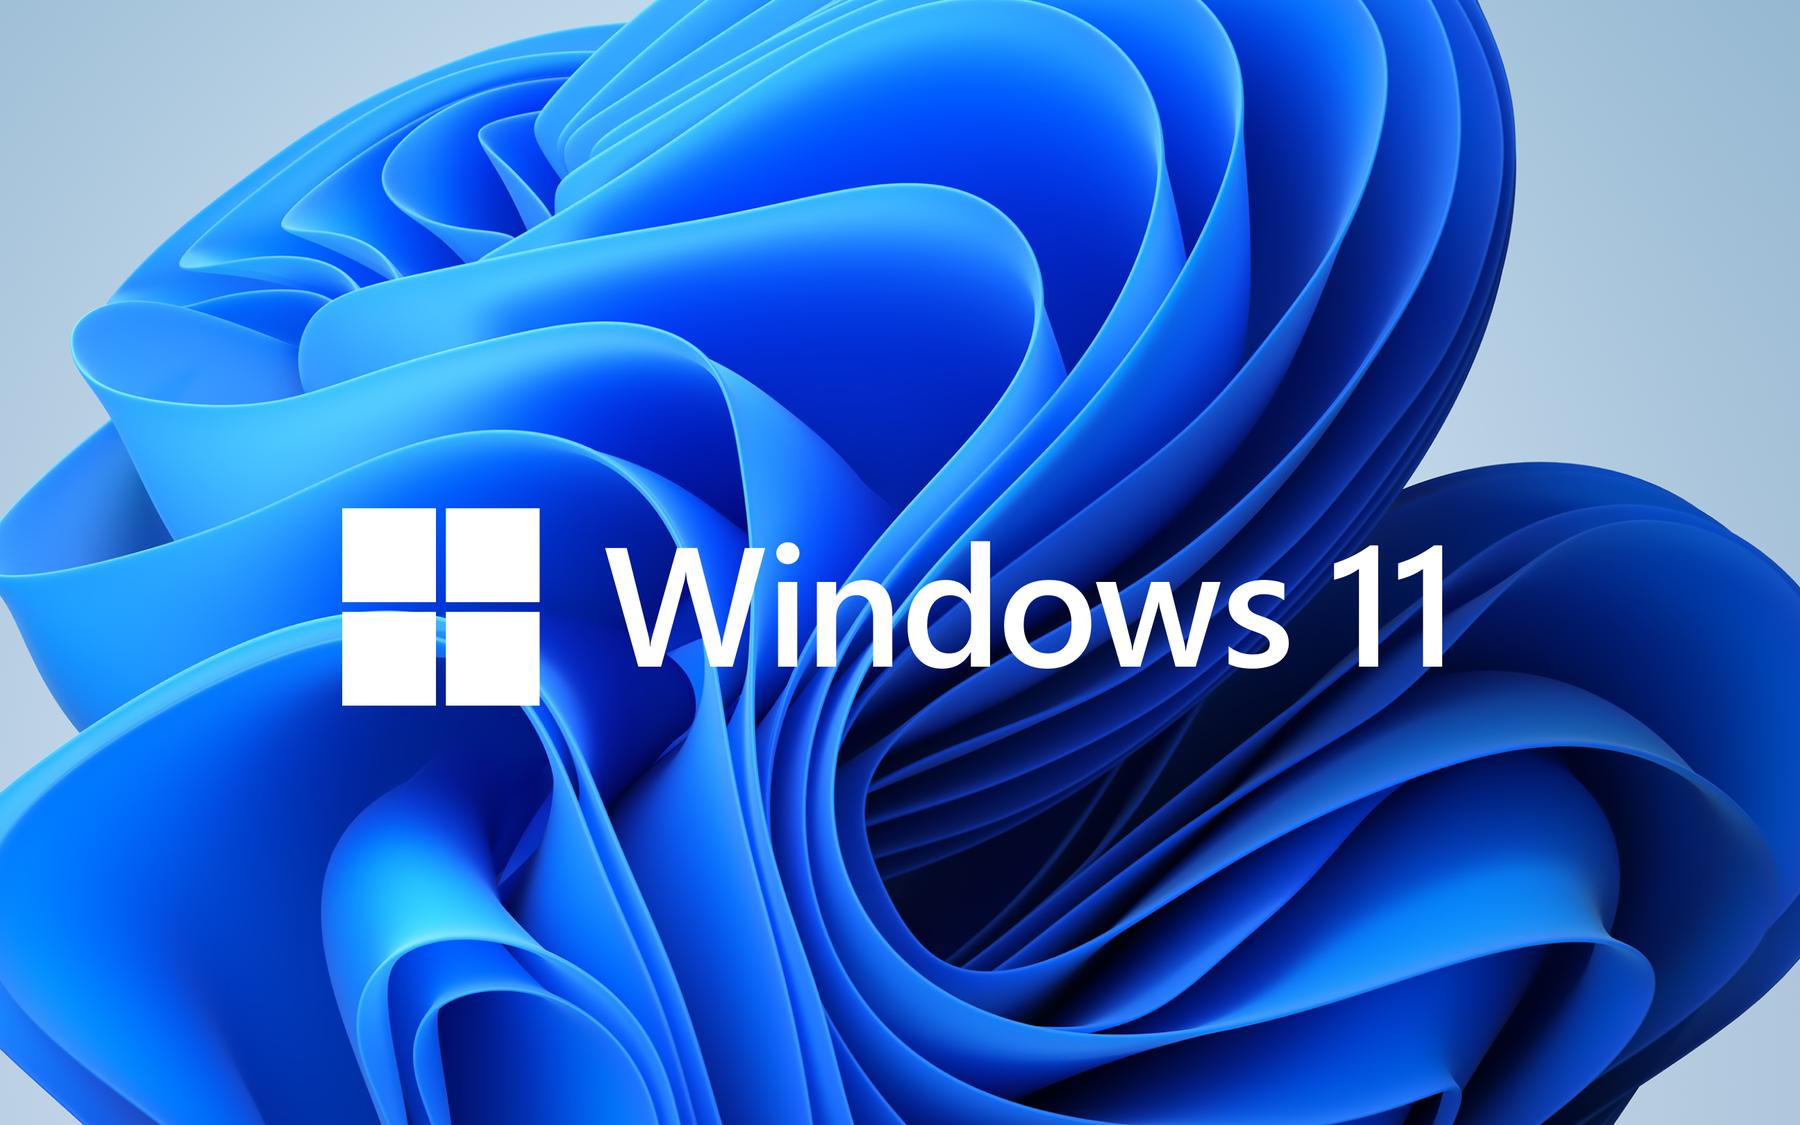 Windows 11 xóa bỏ nhiều tính năng cũ